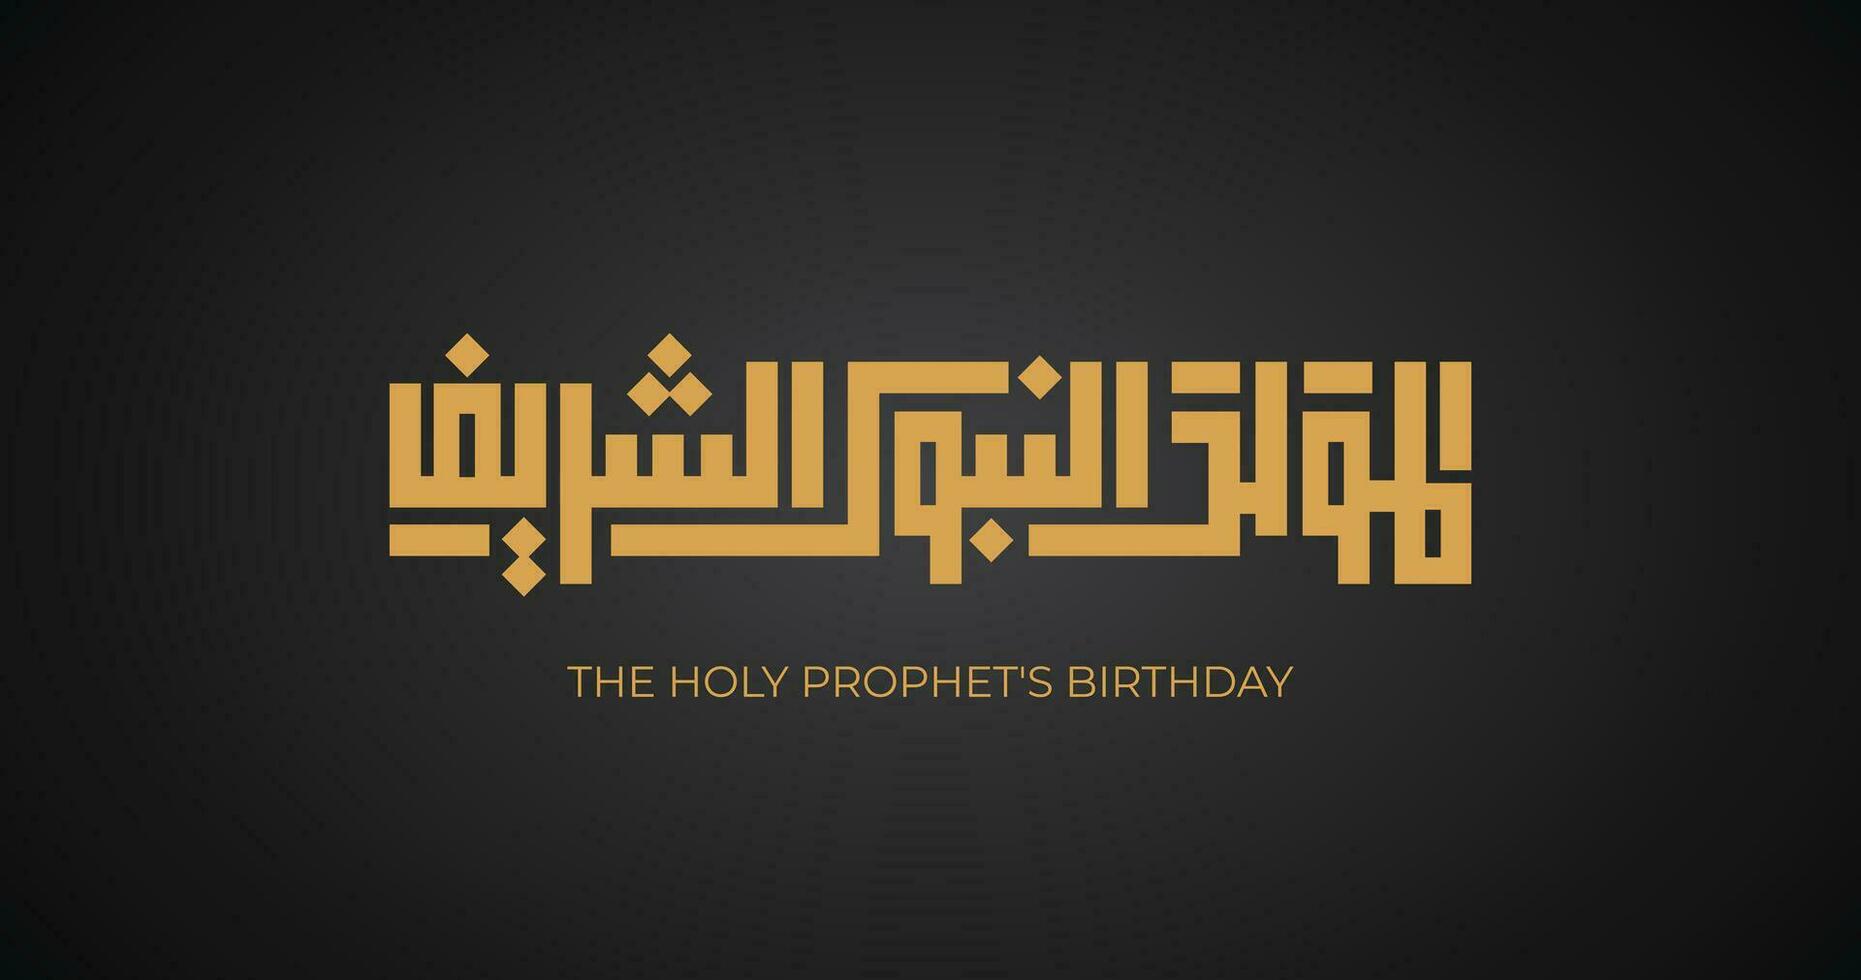 el santo del profeta cumpleaños en Arábica idioma Arábica escrito caligrafía oro en negro para islámico celebracion saludos mohamed profeta cumpleaños saludo tarjeta diseño vector Arte